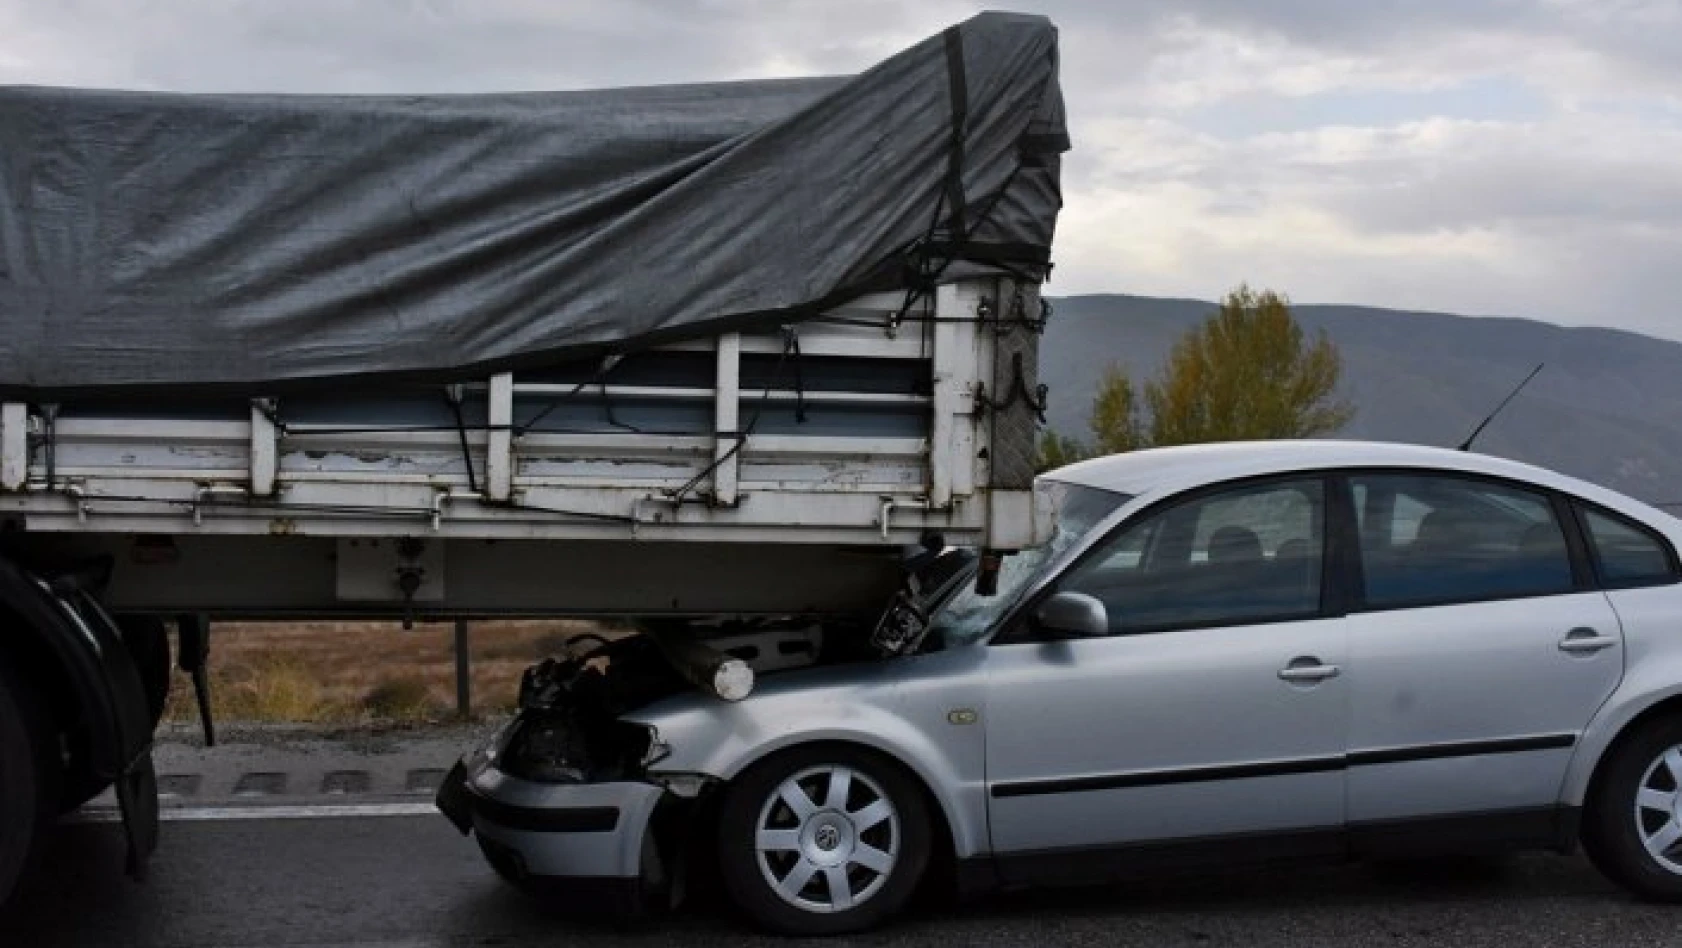 5 aracın karıştığı zincirleme trafik kazasında 6 kişi yaralandı